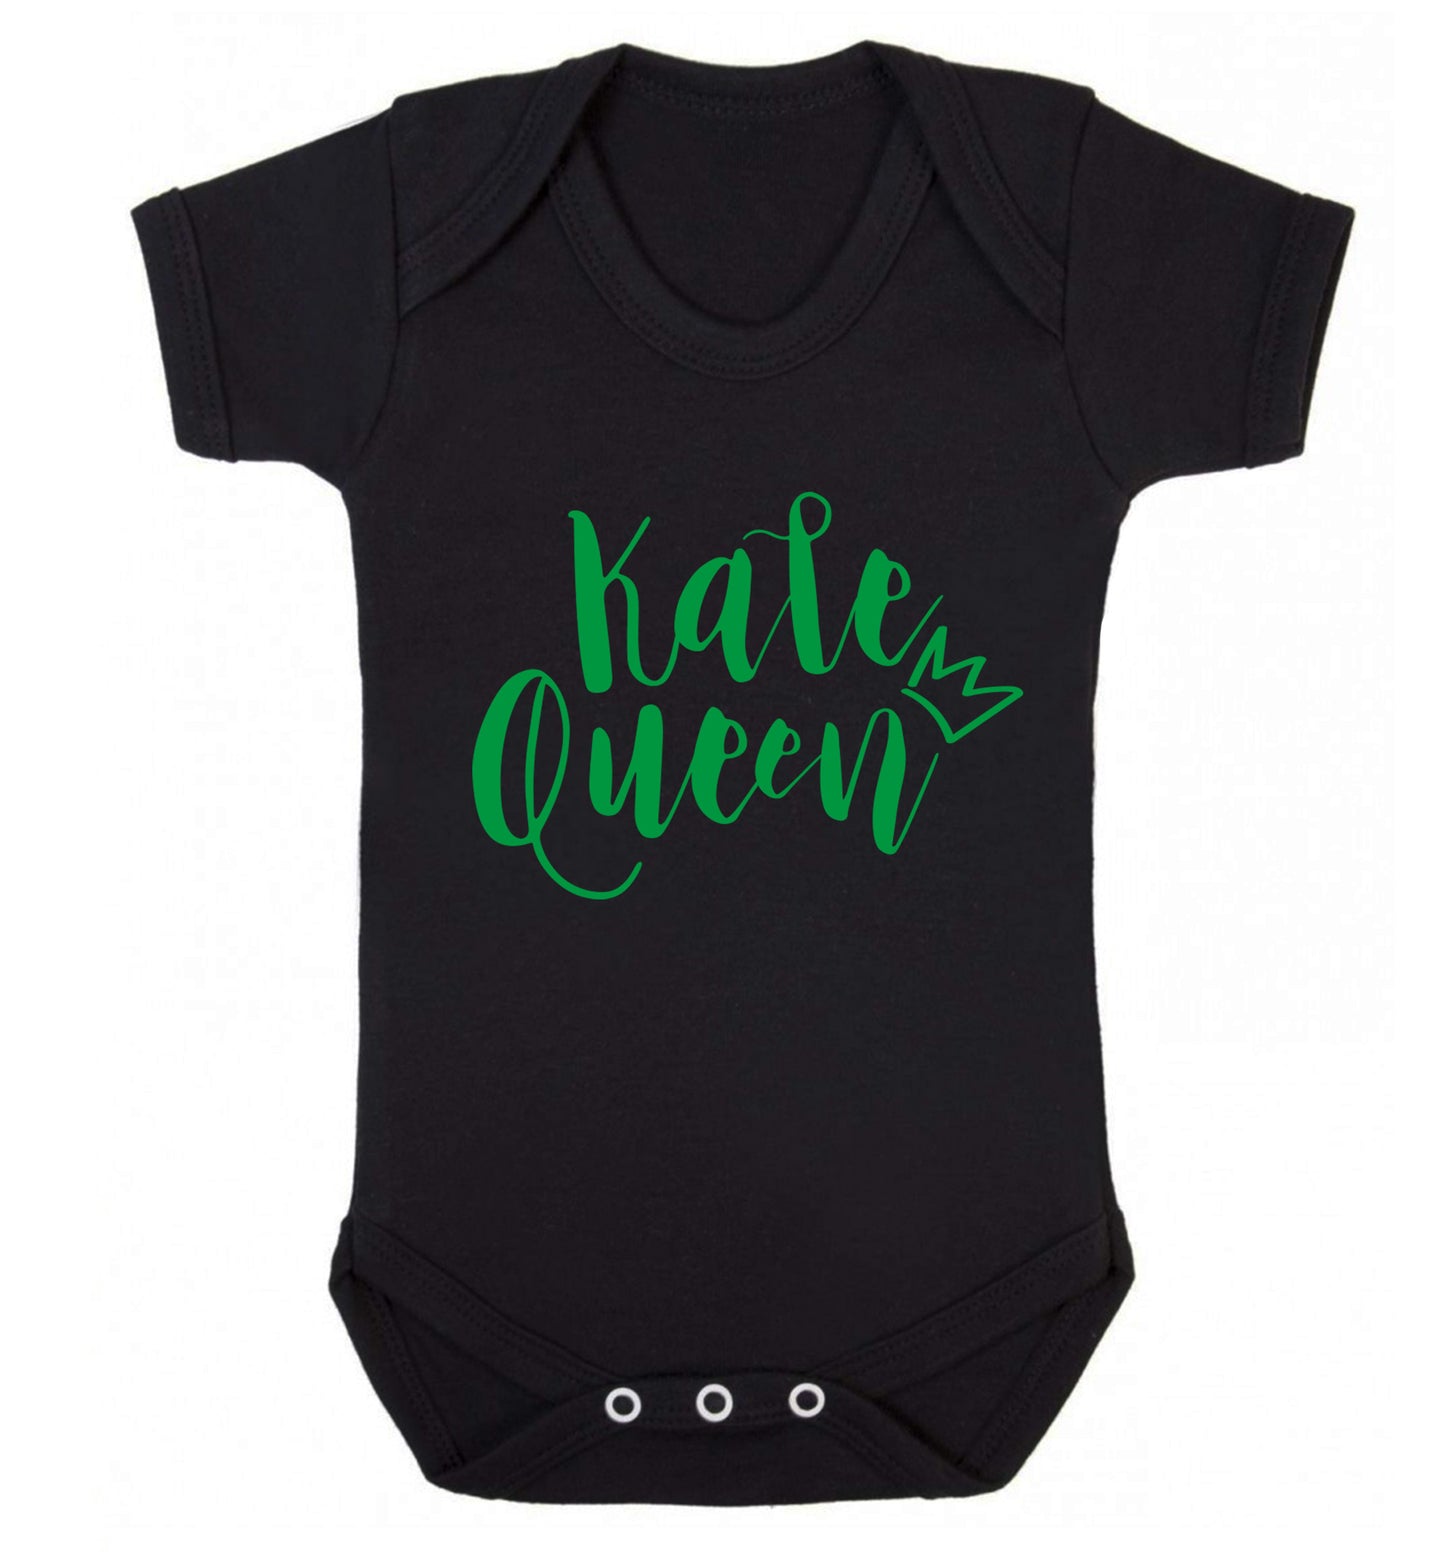 Kale Queen Baby Vest black 18-24 months